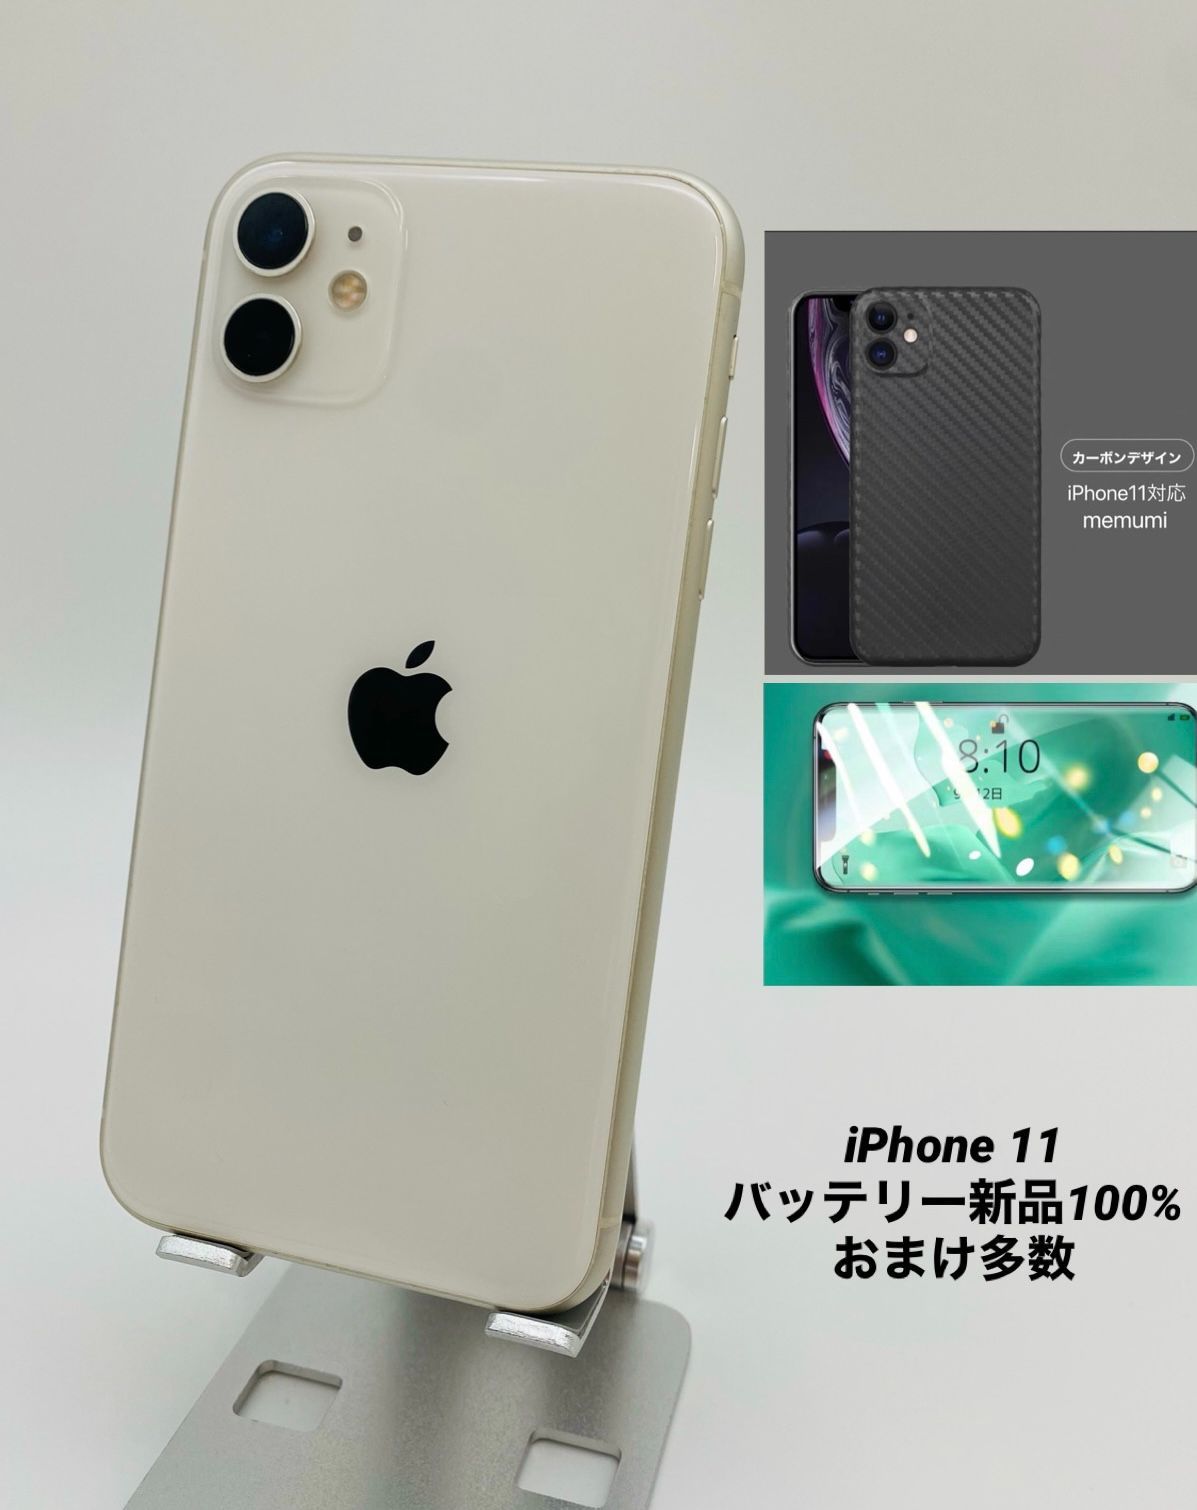 iphone 11 ホワイト 128gb バッテリー100% - スマートフォン本体